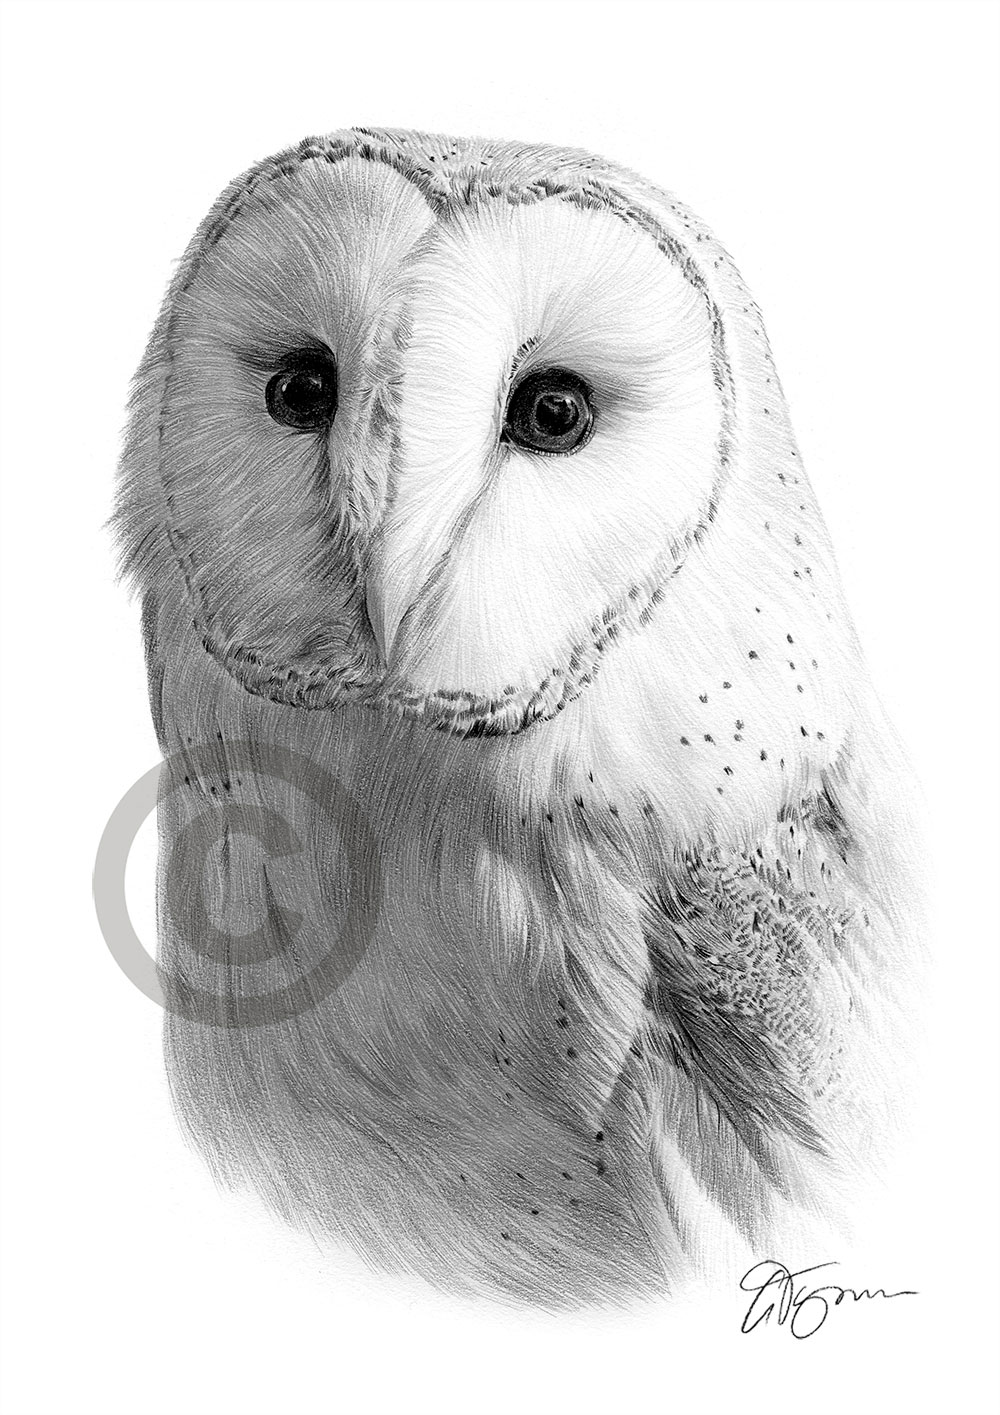 Pencil drawing portrait of a barn owl by artist Gary Tymon